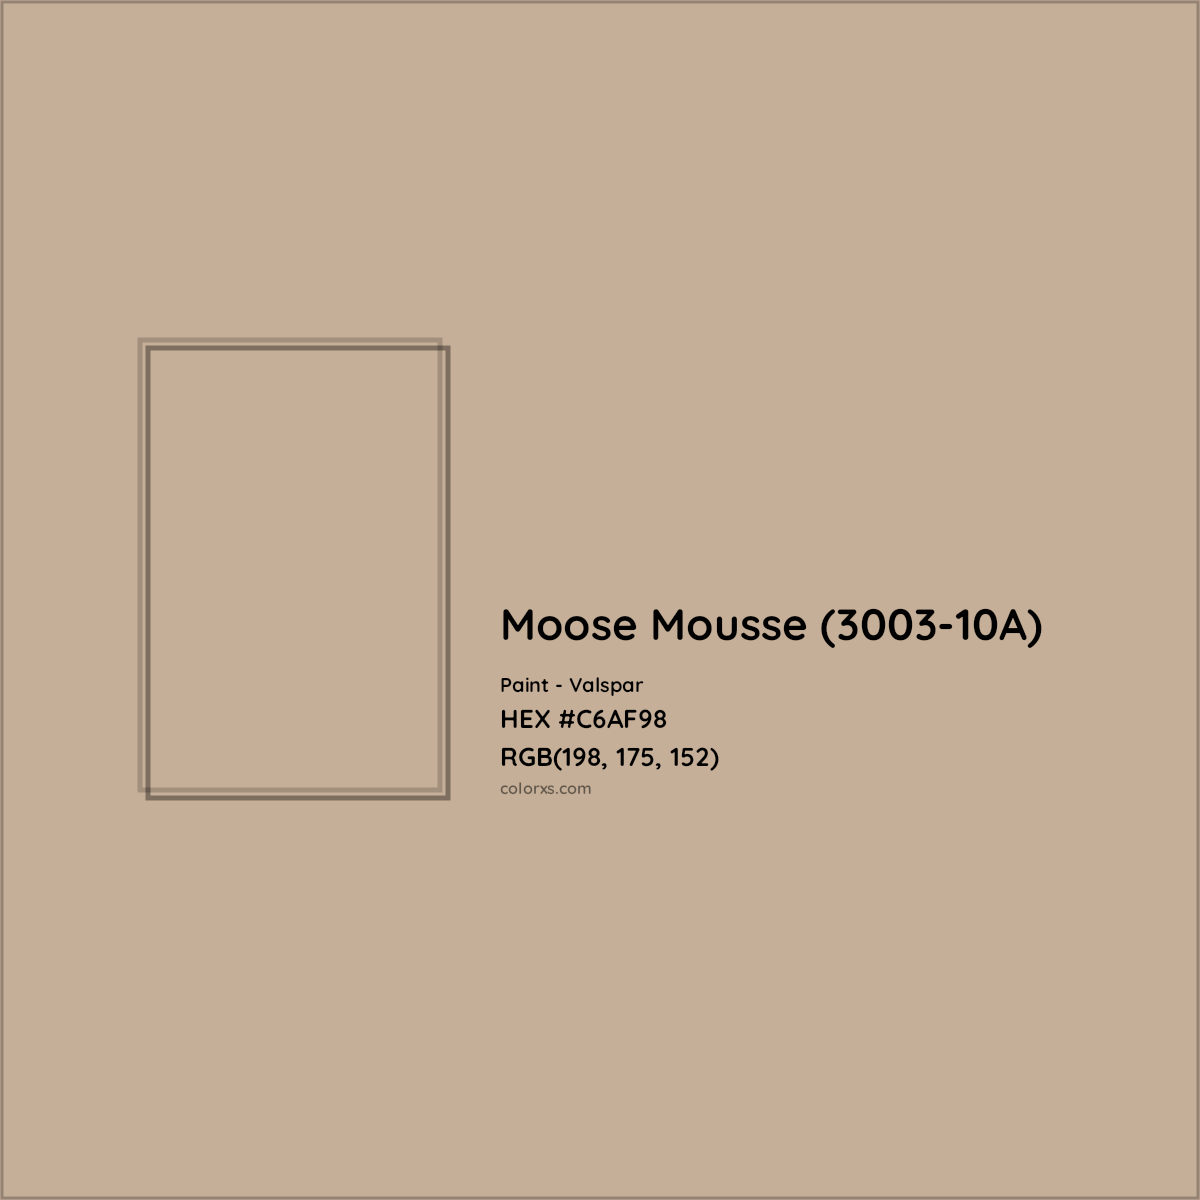 HEX #C6AF98 Moose Mousse (3003-10A) Paint Valspar - Color Code